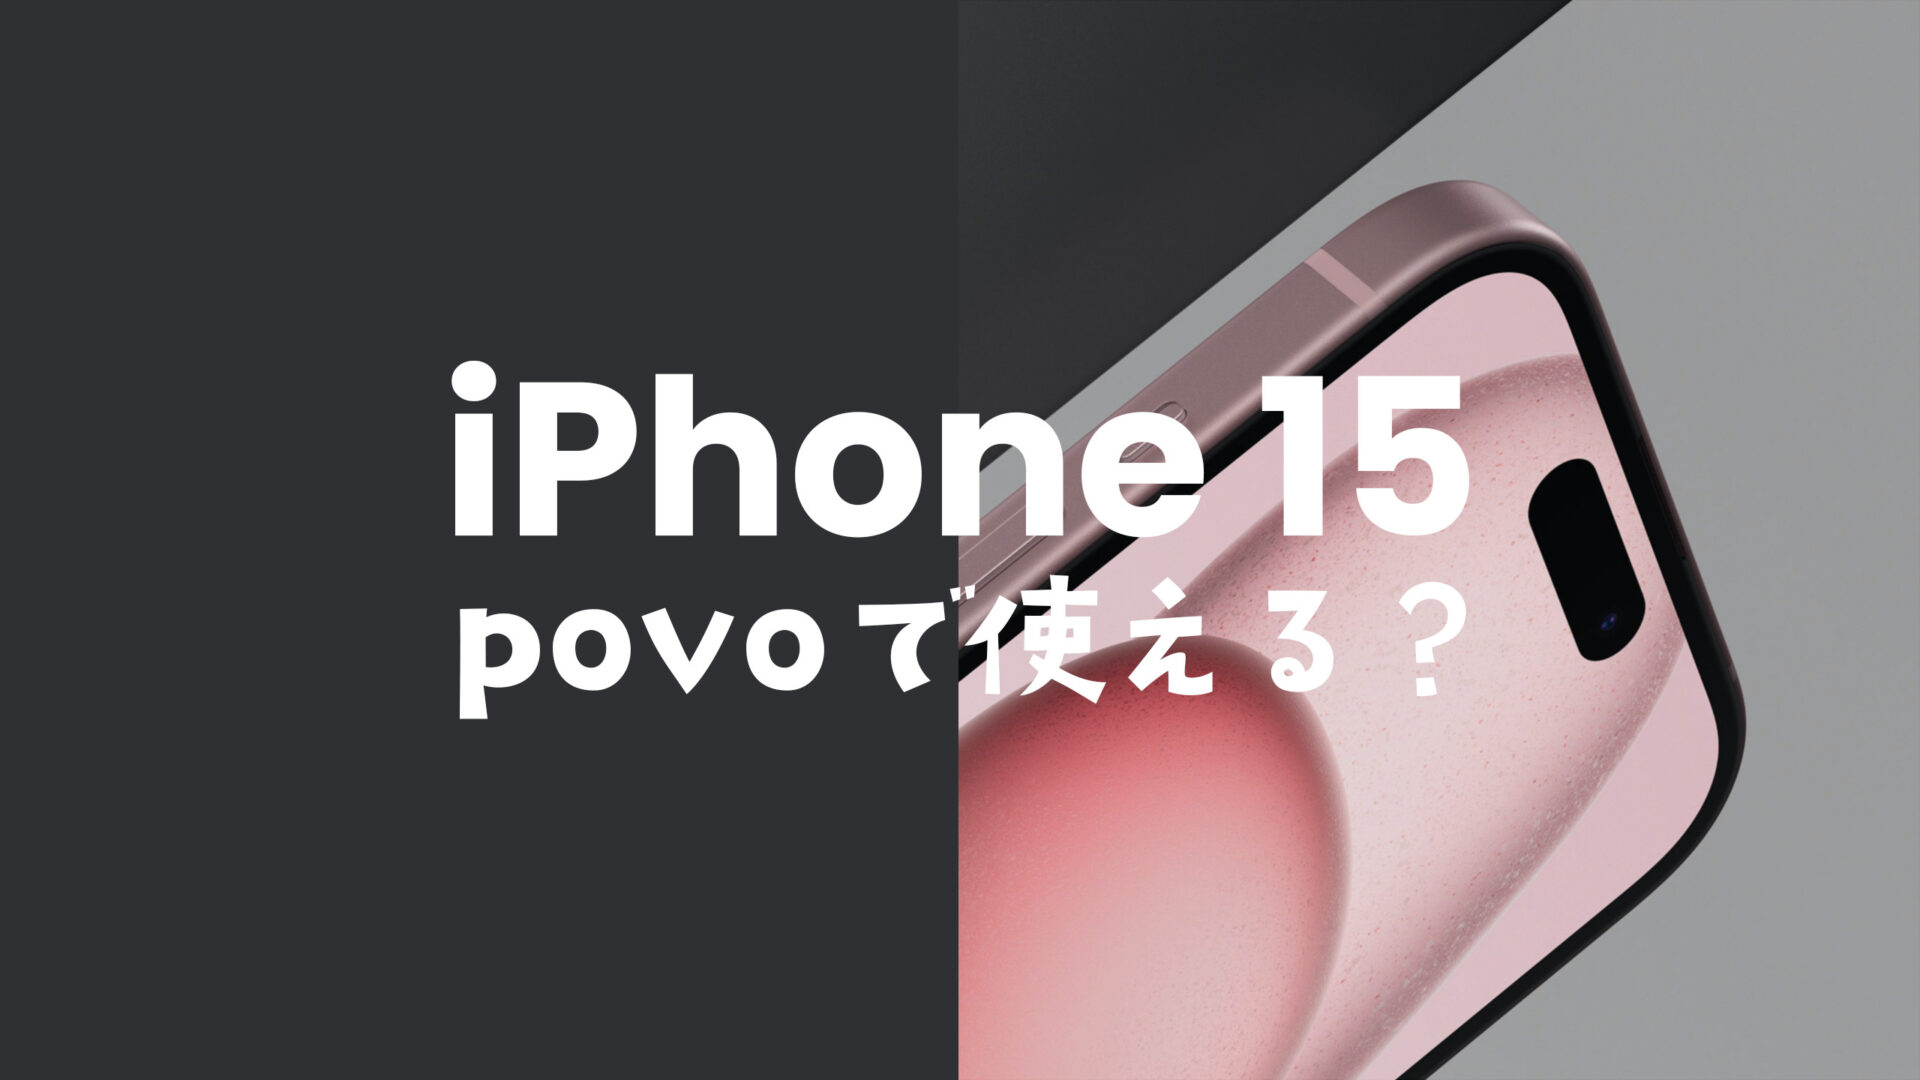 povoならiPhone 15/アイフォン15 Proが使える&対応機種で動作確認済み。のサムネイル画像